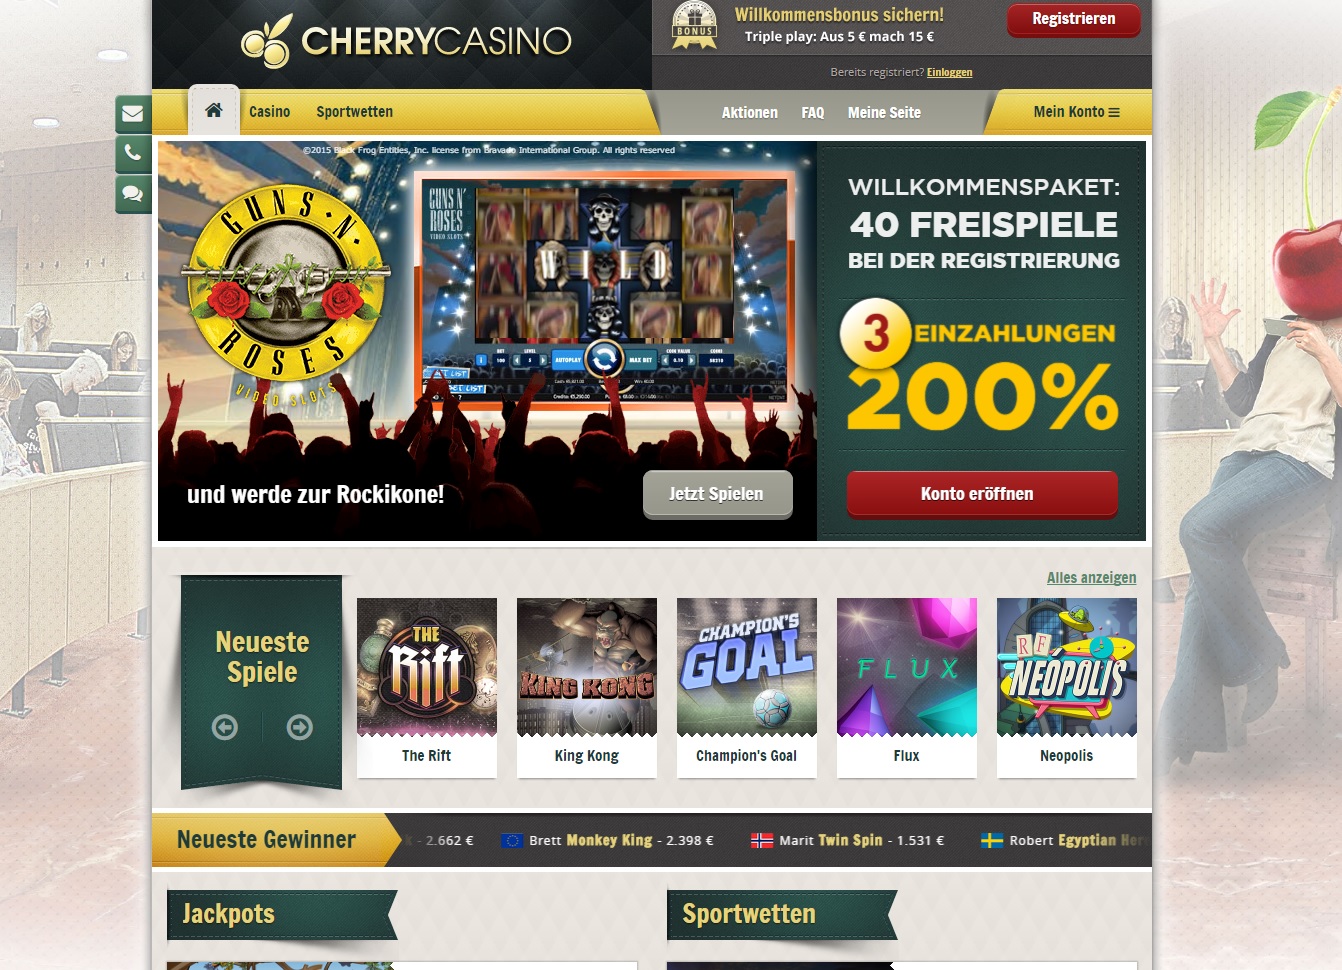  deutsche online casinos mit bonus ohne einzahlung 